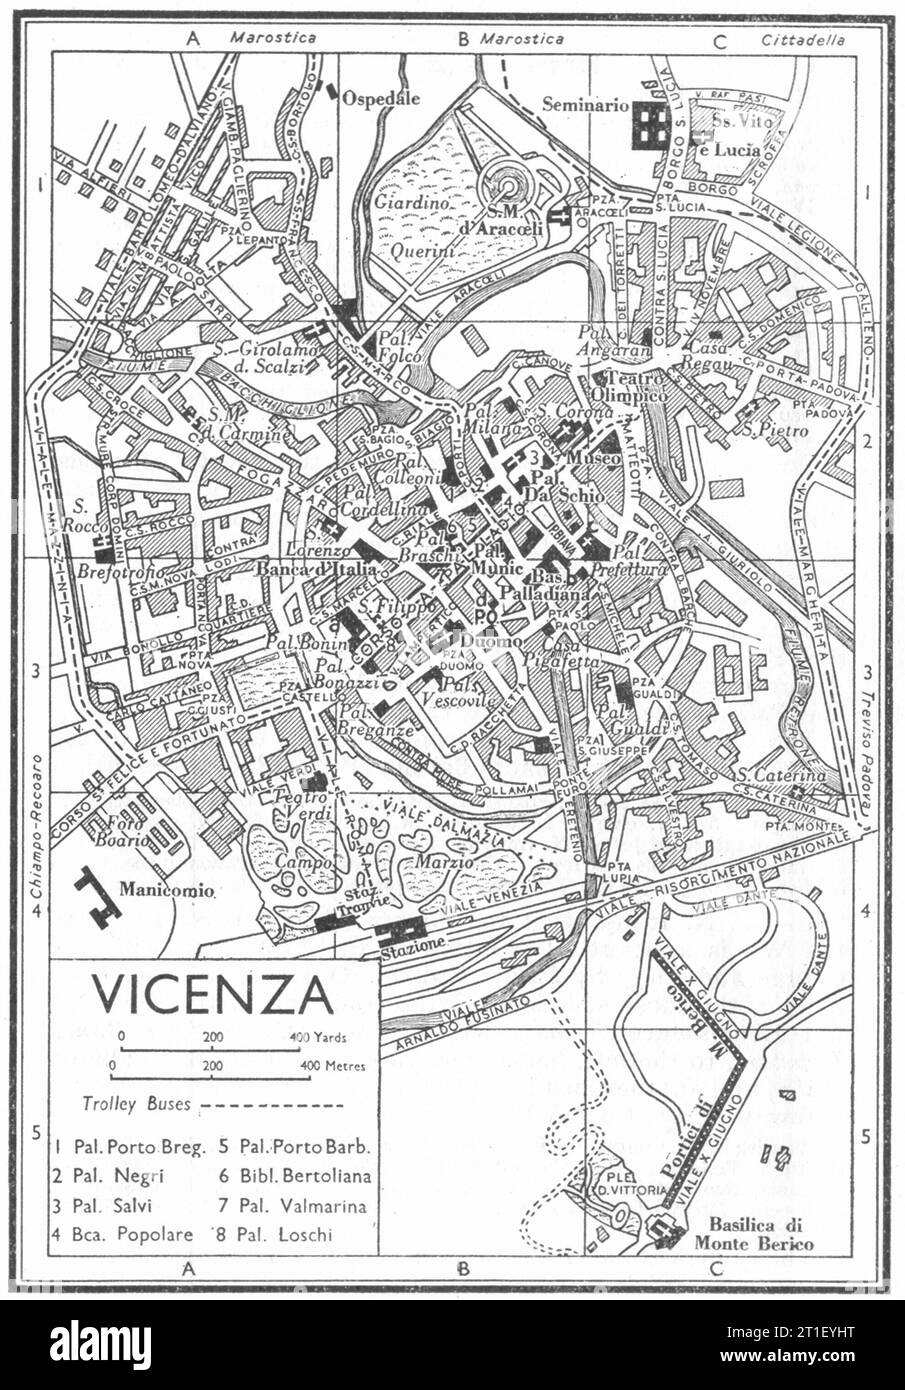 Piano città DI VICENZA. Italia 1953 vecchia mappa d'epoca Foto Stock